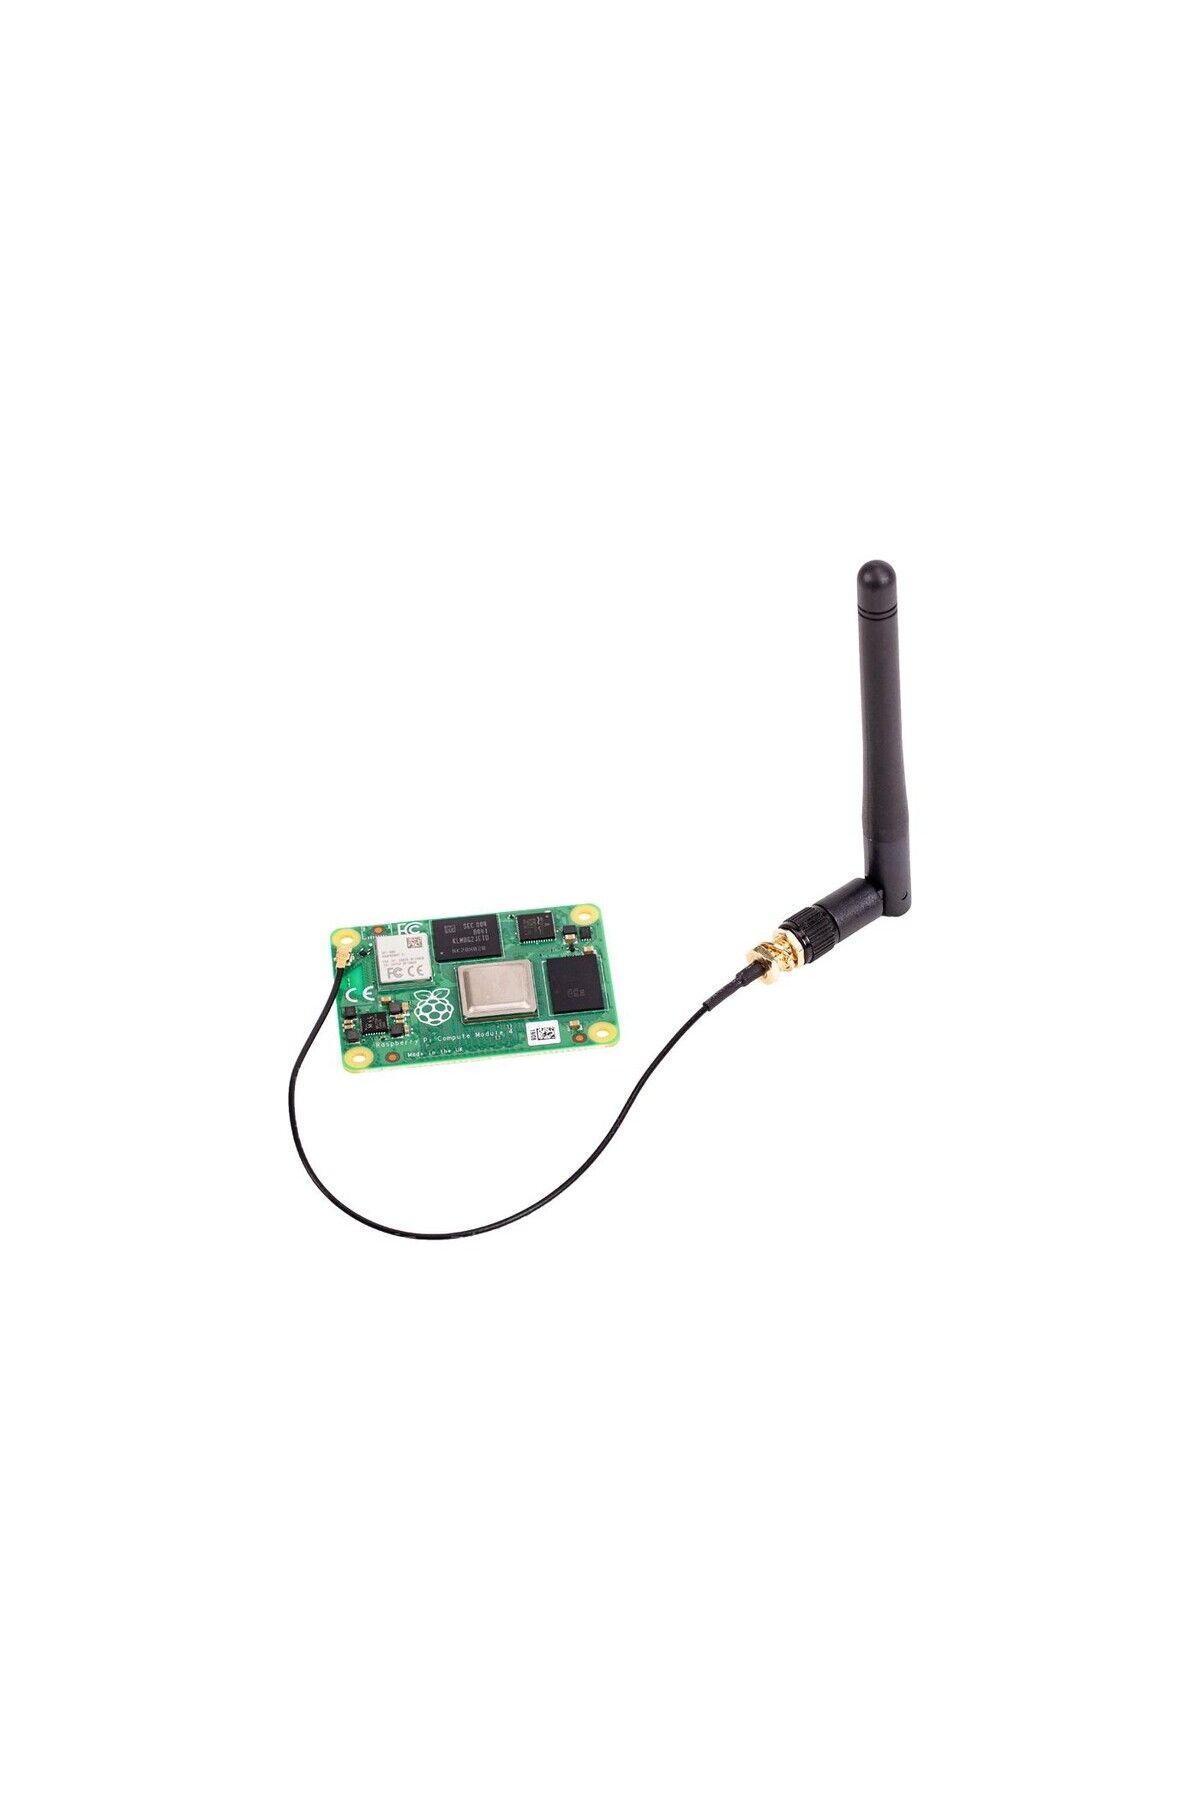 Raspberry Pi Cm4 Anten Kit